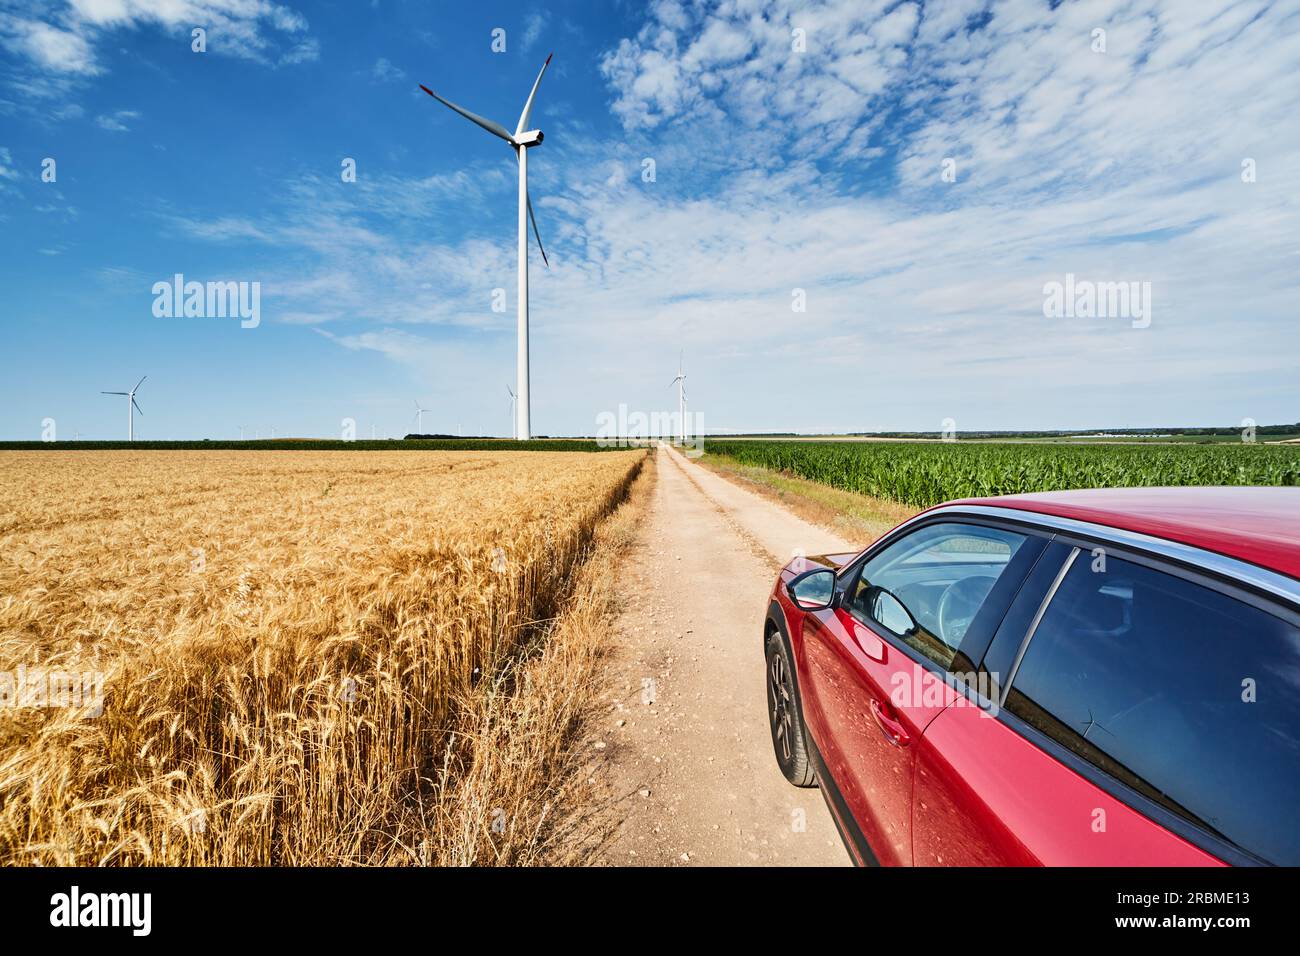 Paysage rural avec des éoliennes, route de campagne parmi les champs de cultures et voiture rouge Banque D'Images